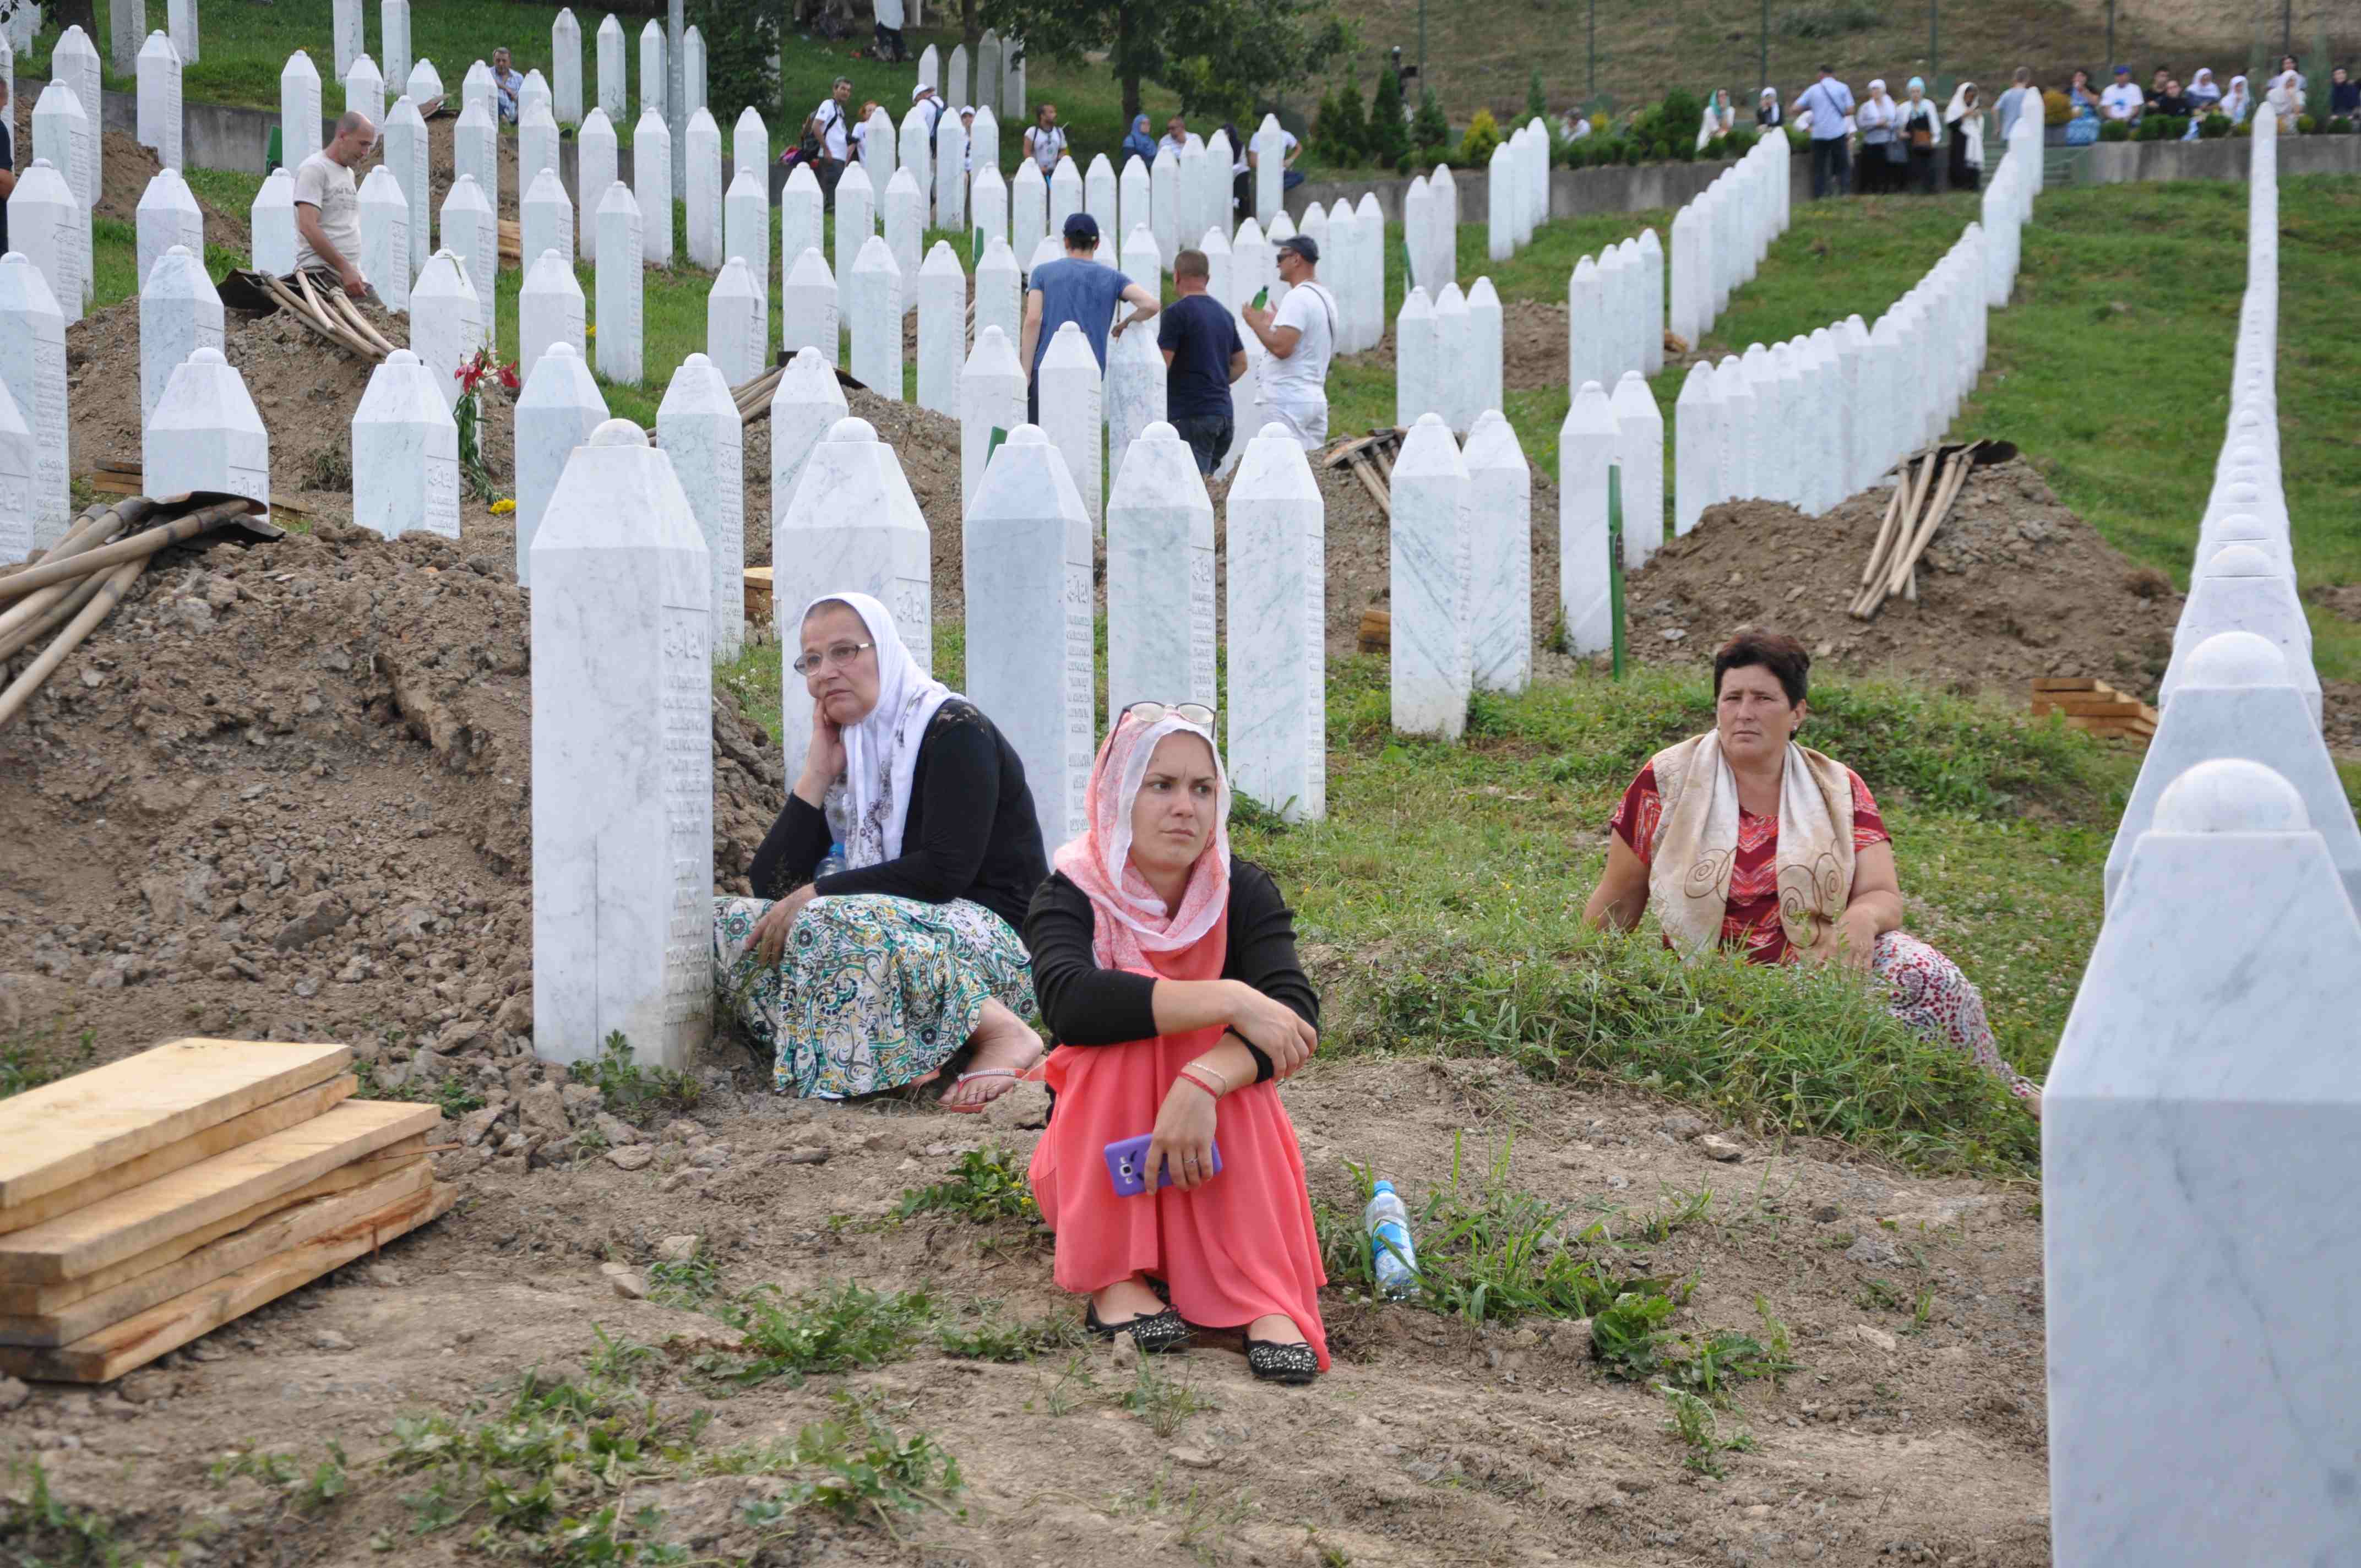 Bosenské ženy oplakávají své mrtvé i 22 let po srebrenickém masakru